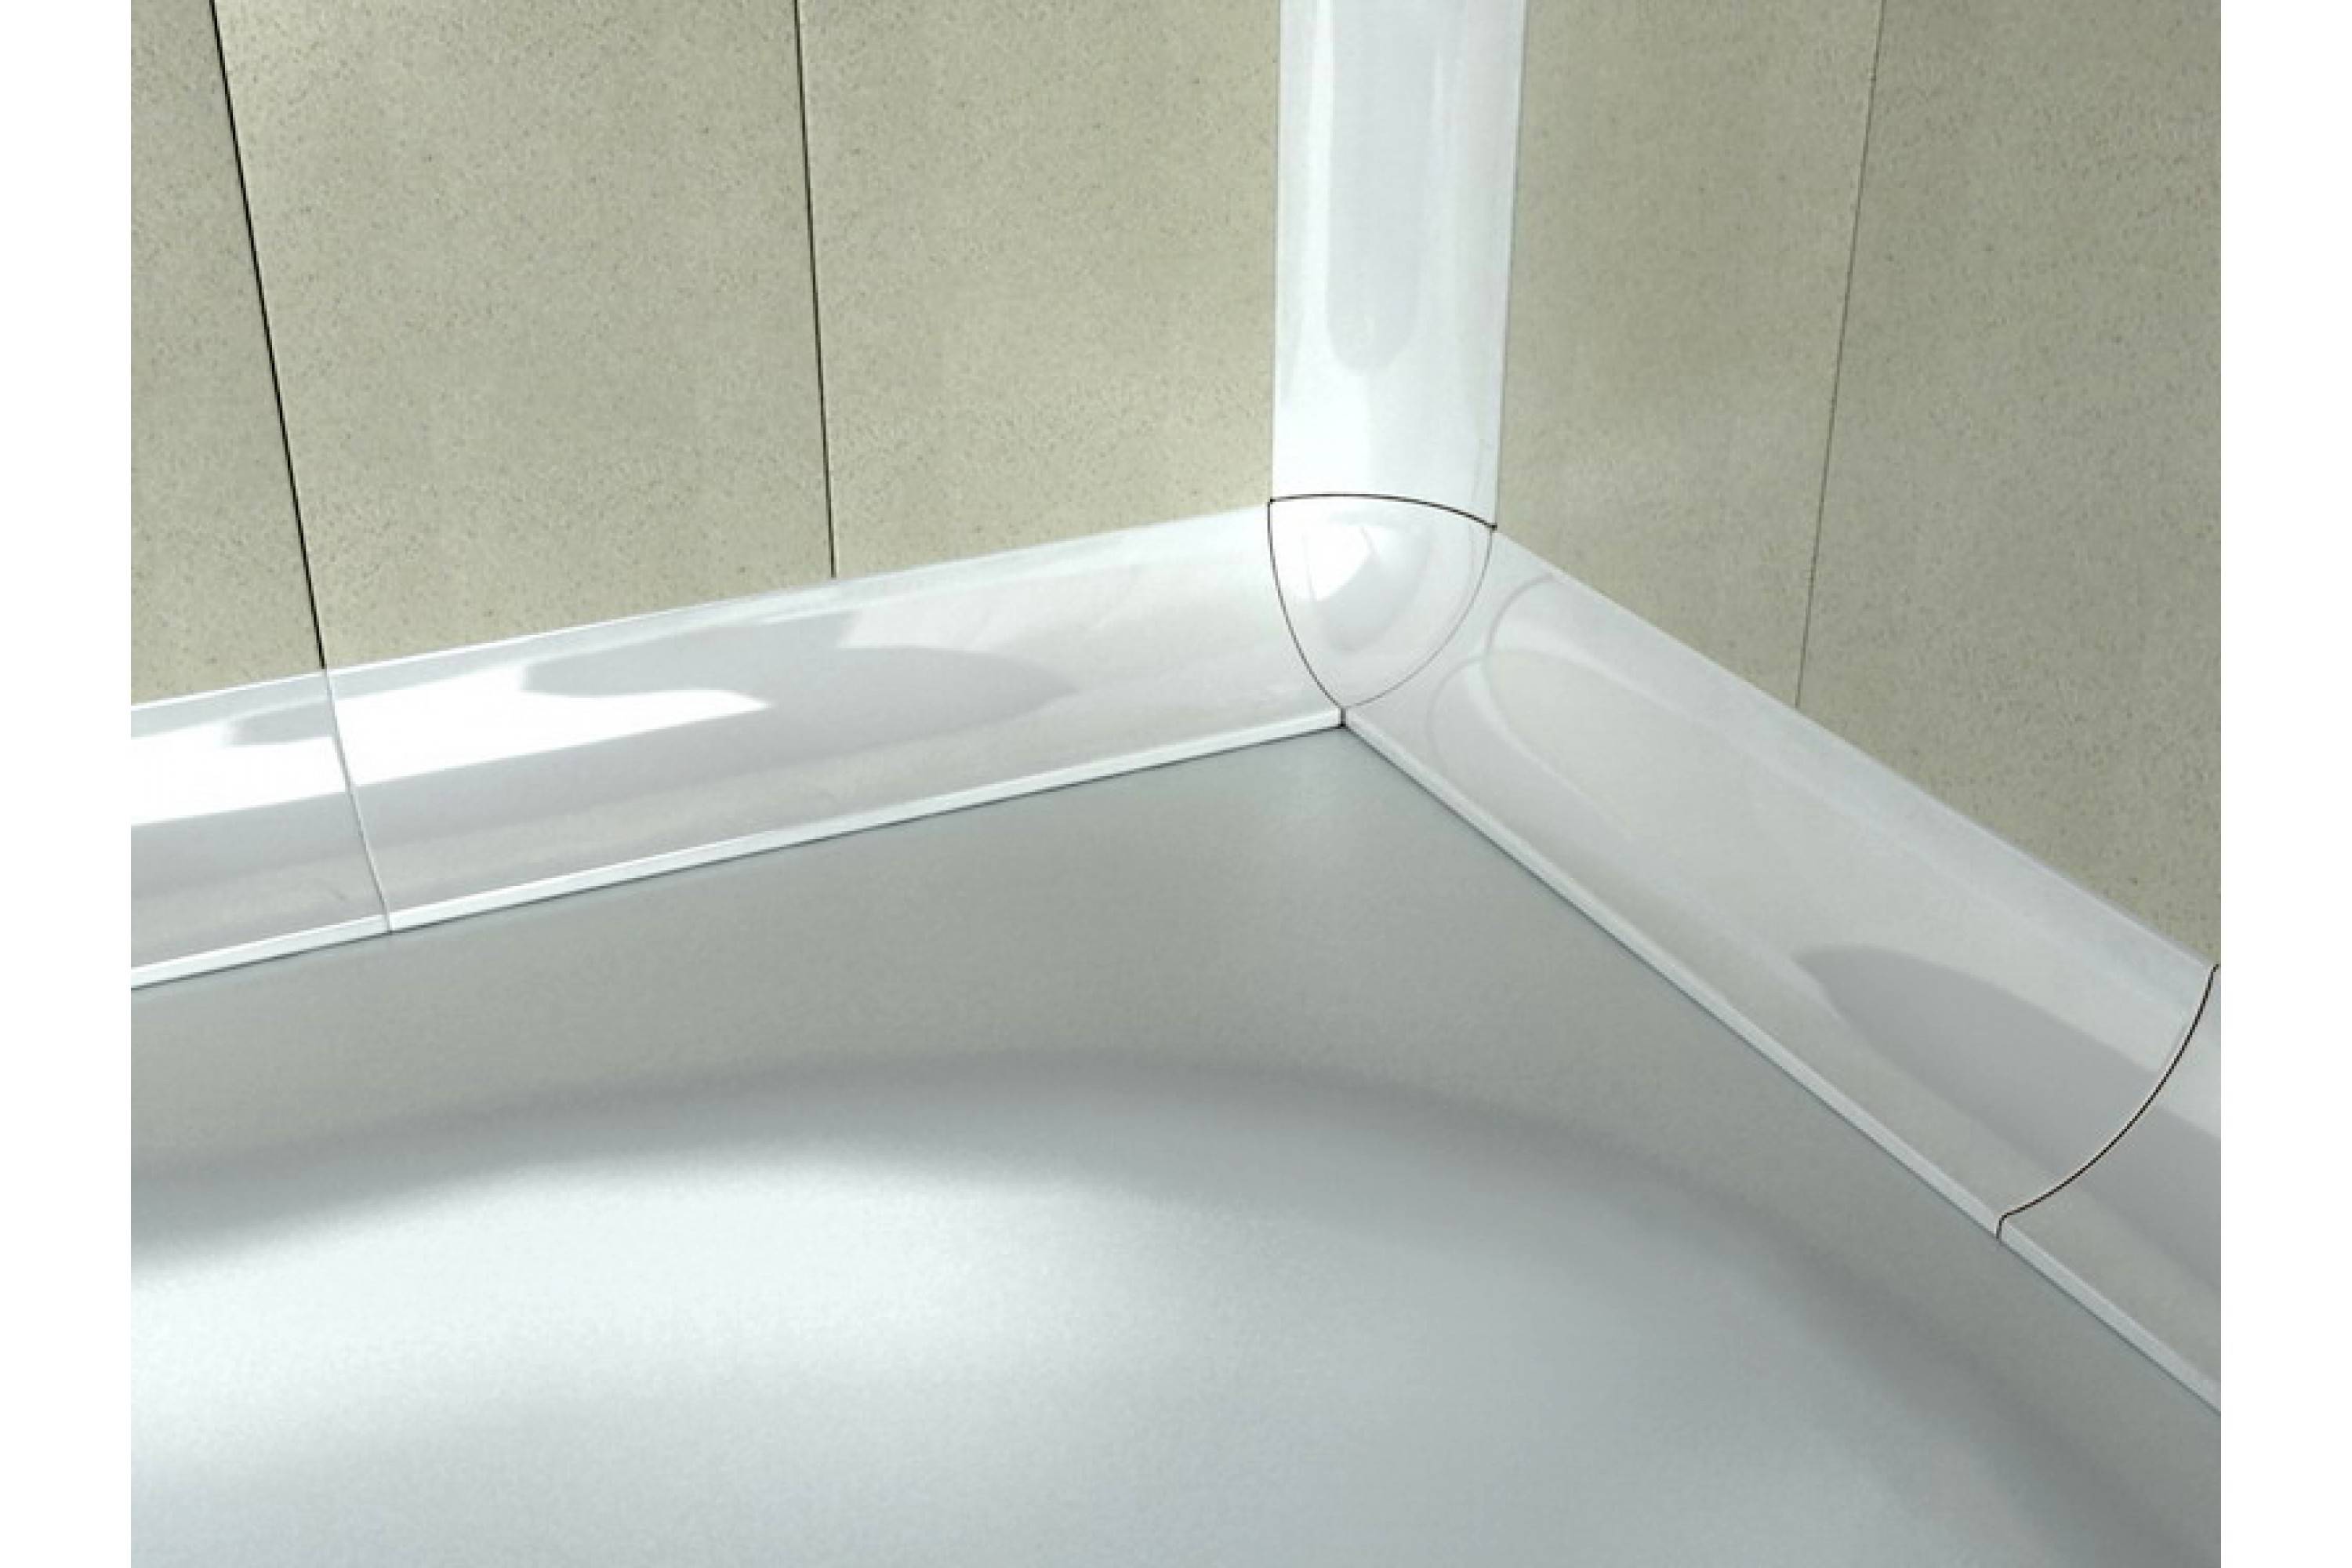 Уголки для ванной: как приклеить пластиковый в комнату, стыки клеить на ванну правильно, видео как установить
крепление уголков для ванной: 3 вида – дизайн интерьера и ремонт квартиры своими руками